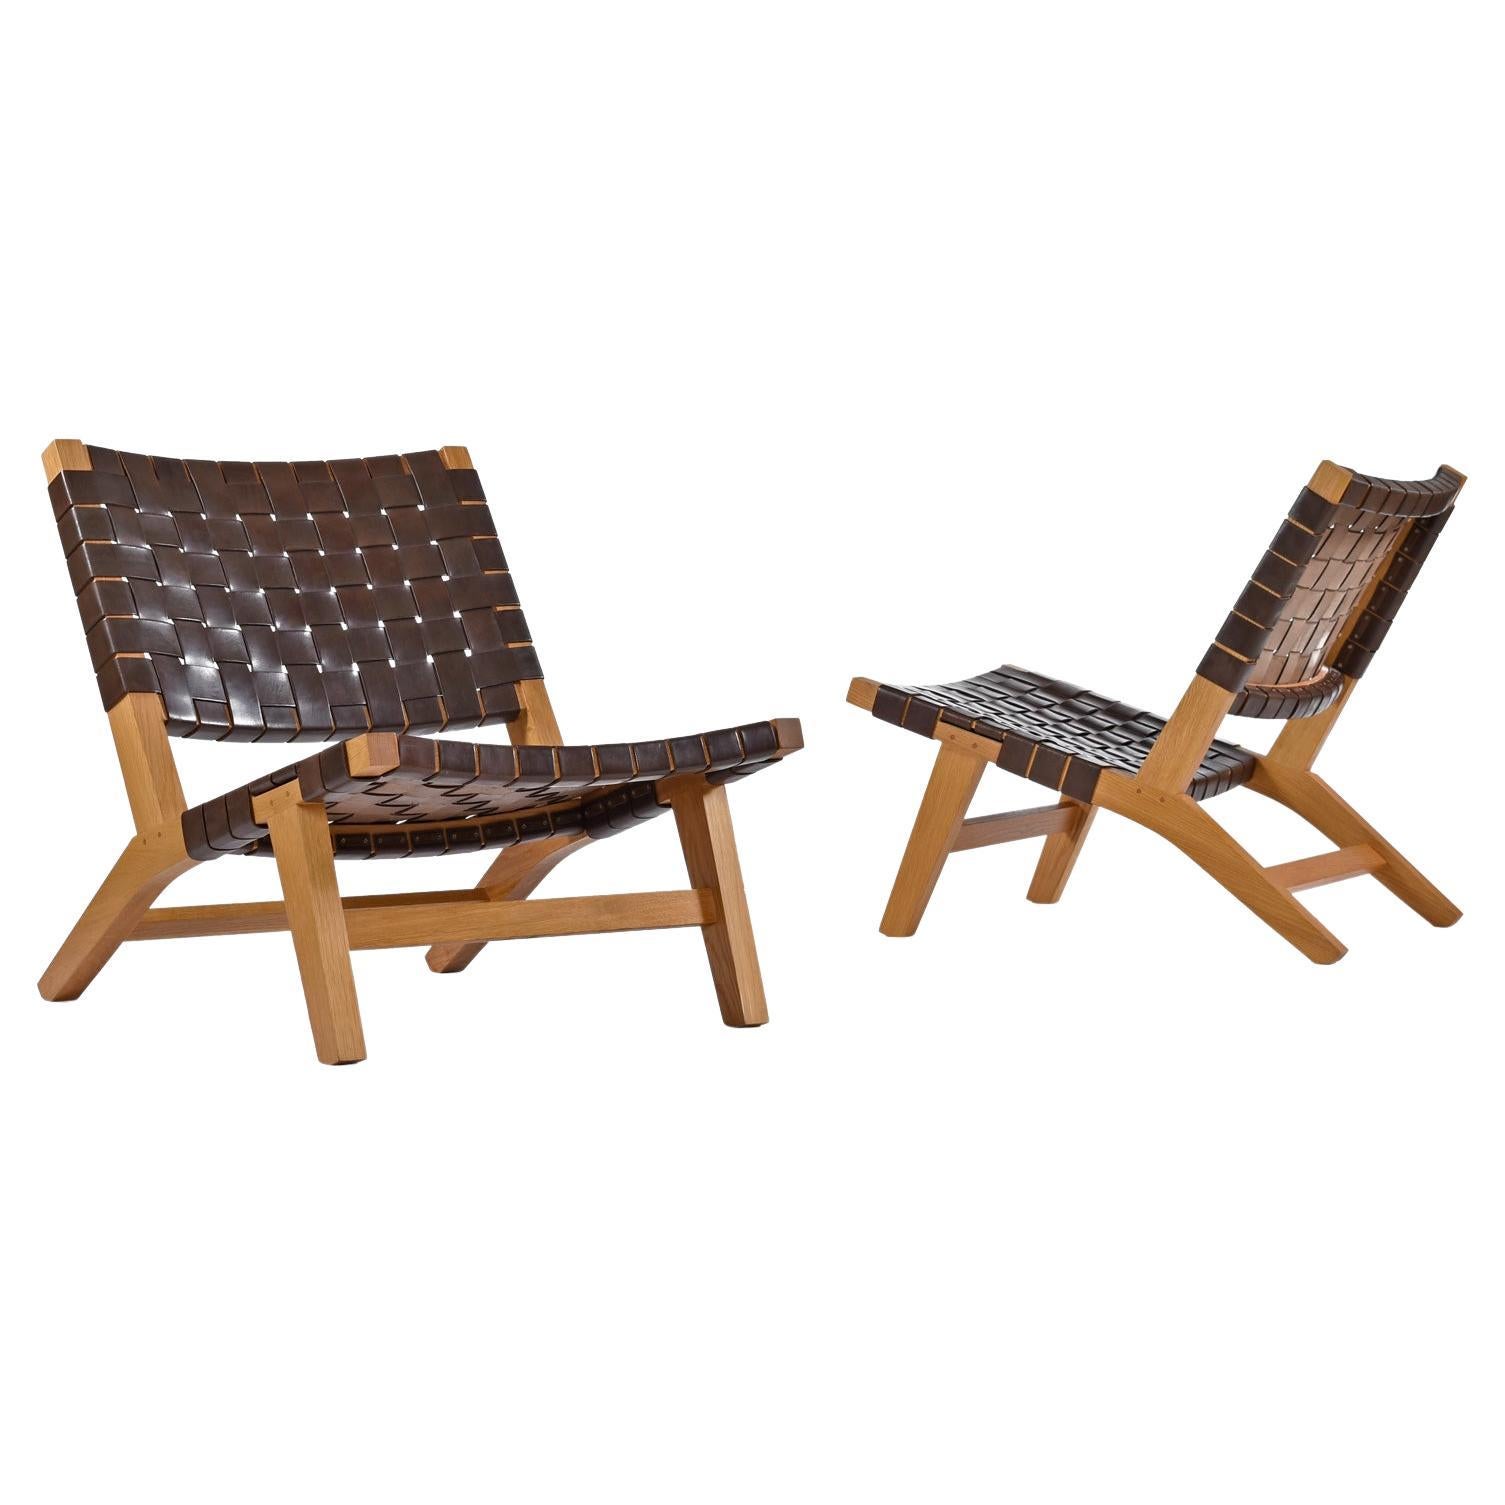 Sillones de estilo danés de fresno macizo con correa de cuero coñac 128 Lounge Chairs by De La Espada